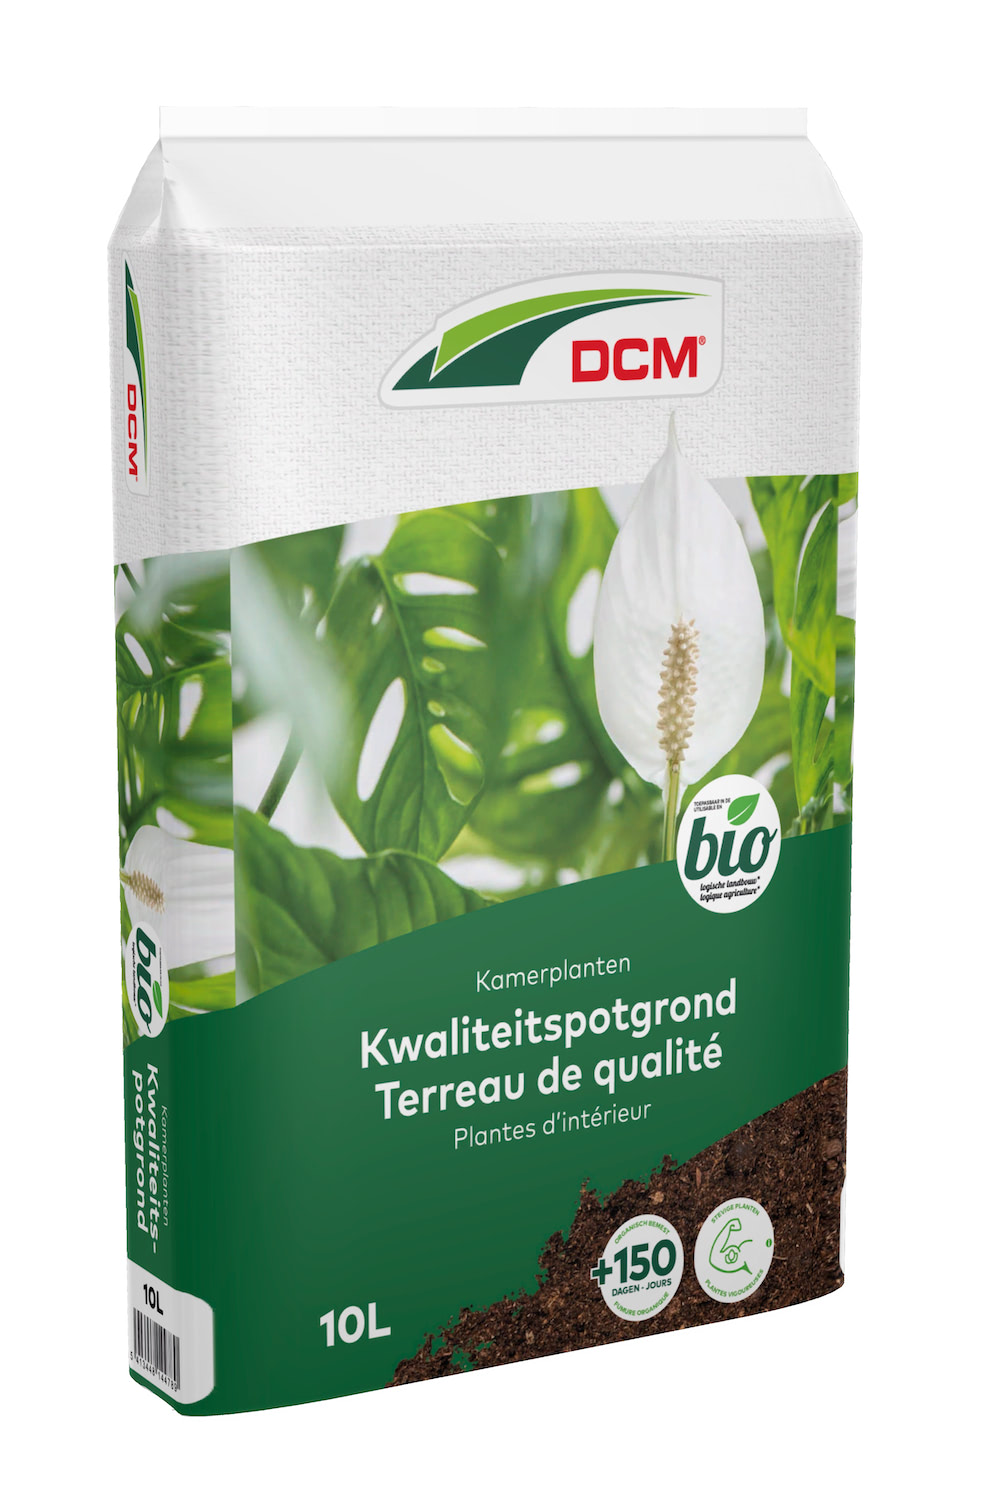 mechanisch Ingrijpen Verdikken Beste potgrond voor kamerplanten - DCM Ecoterra